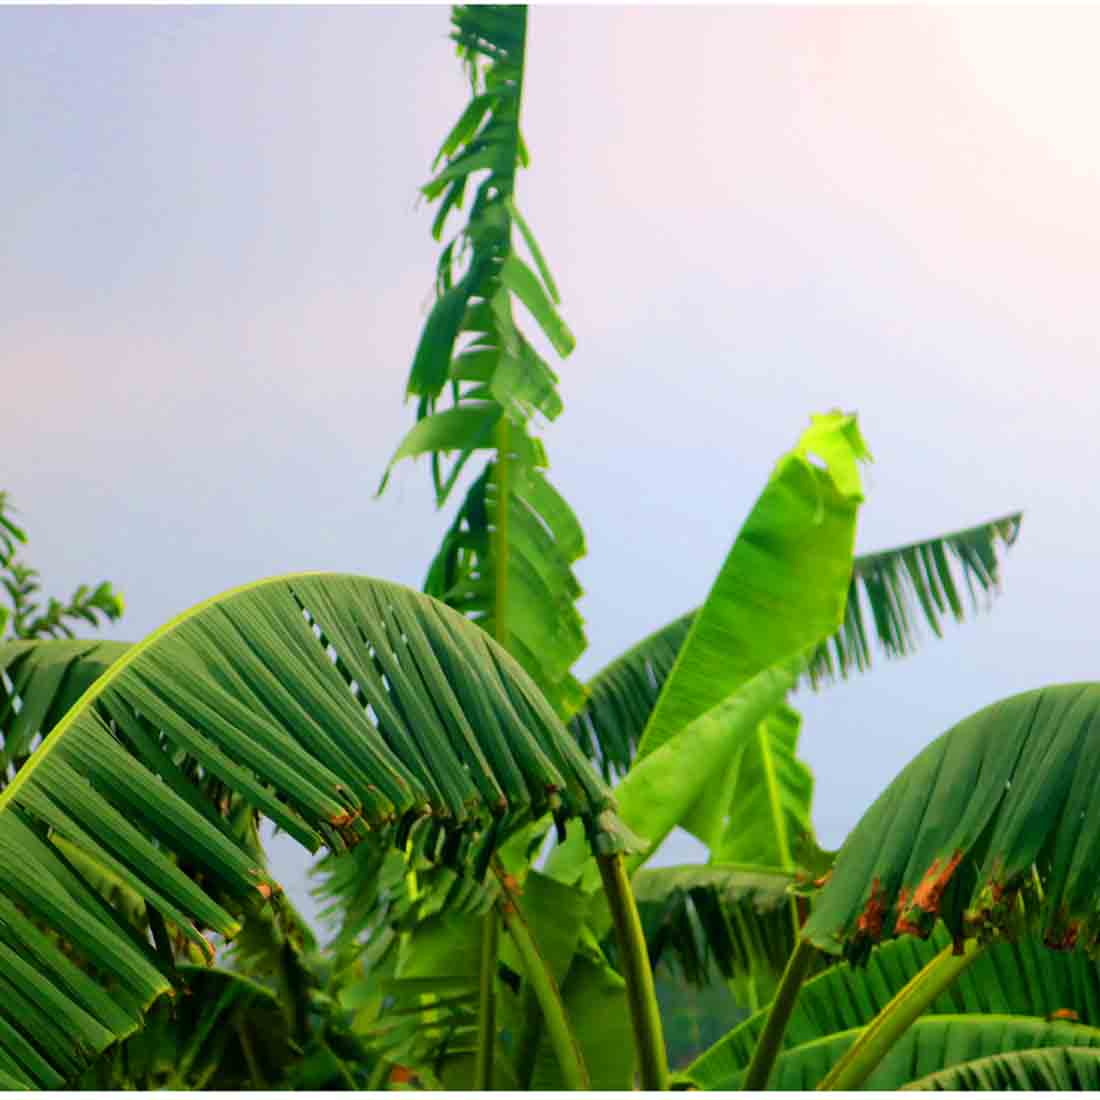 Banana Tree Kola Photography in Bangladesh preview image.